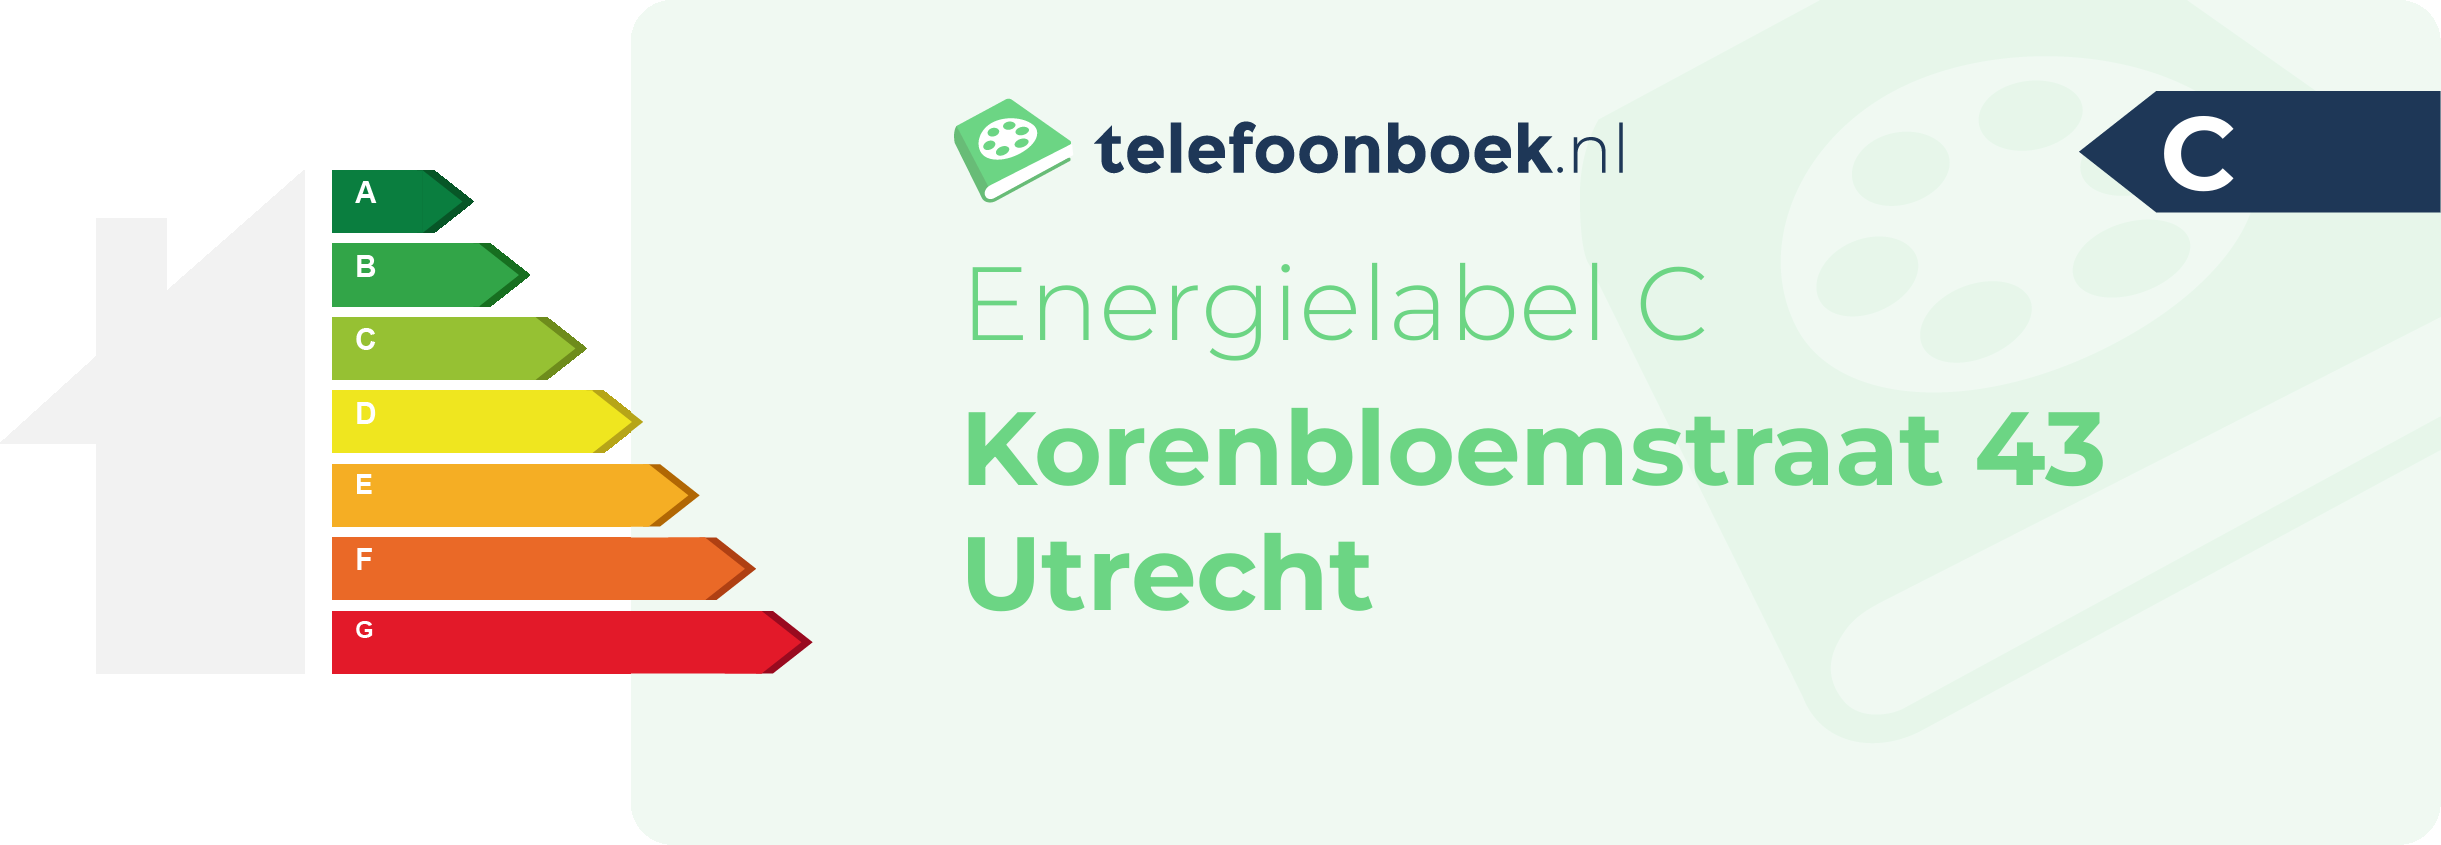 Energielabel Korenbloemstraat 43 Utrecht